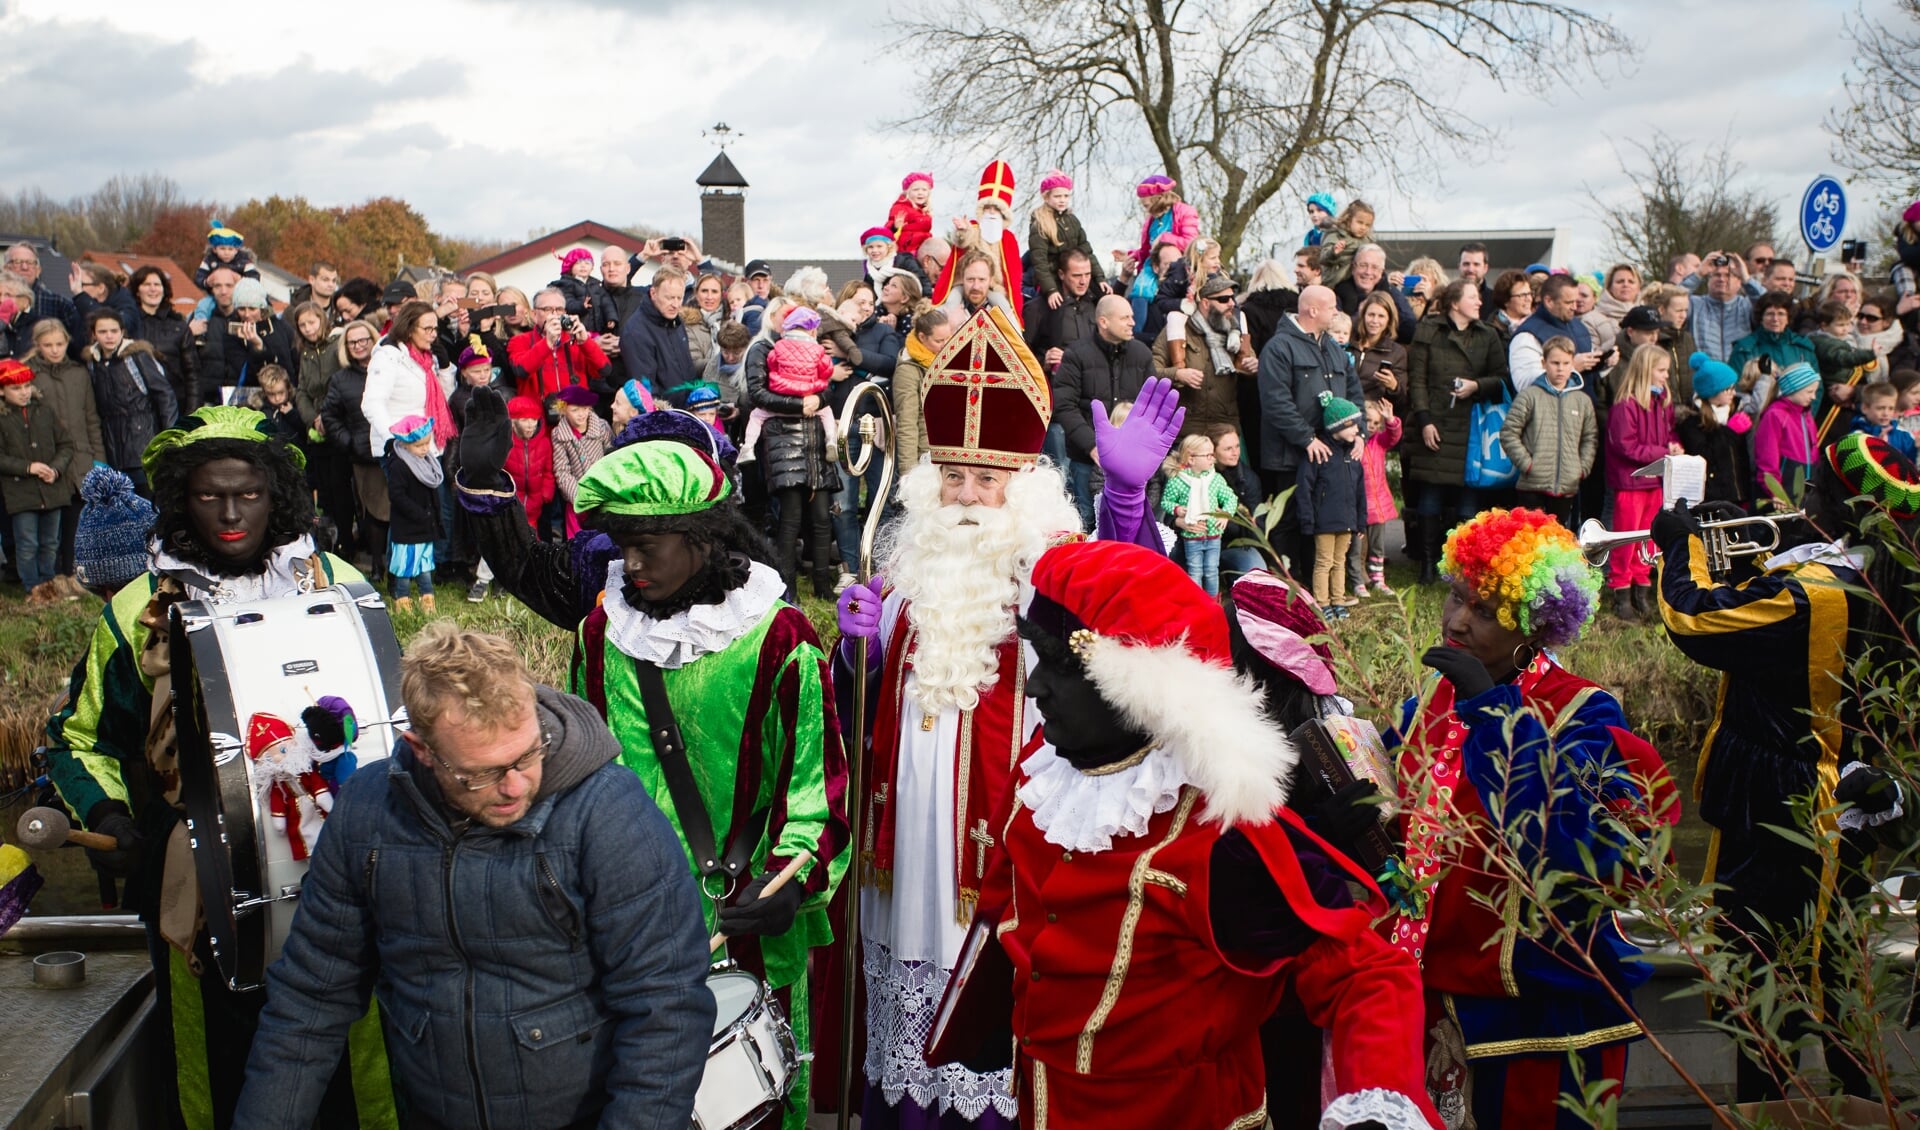 De intocht van Sinterklaas in Nieuwerkerk in 2016. (foto: archief HvH)